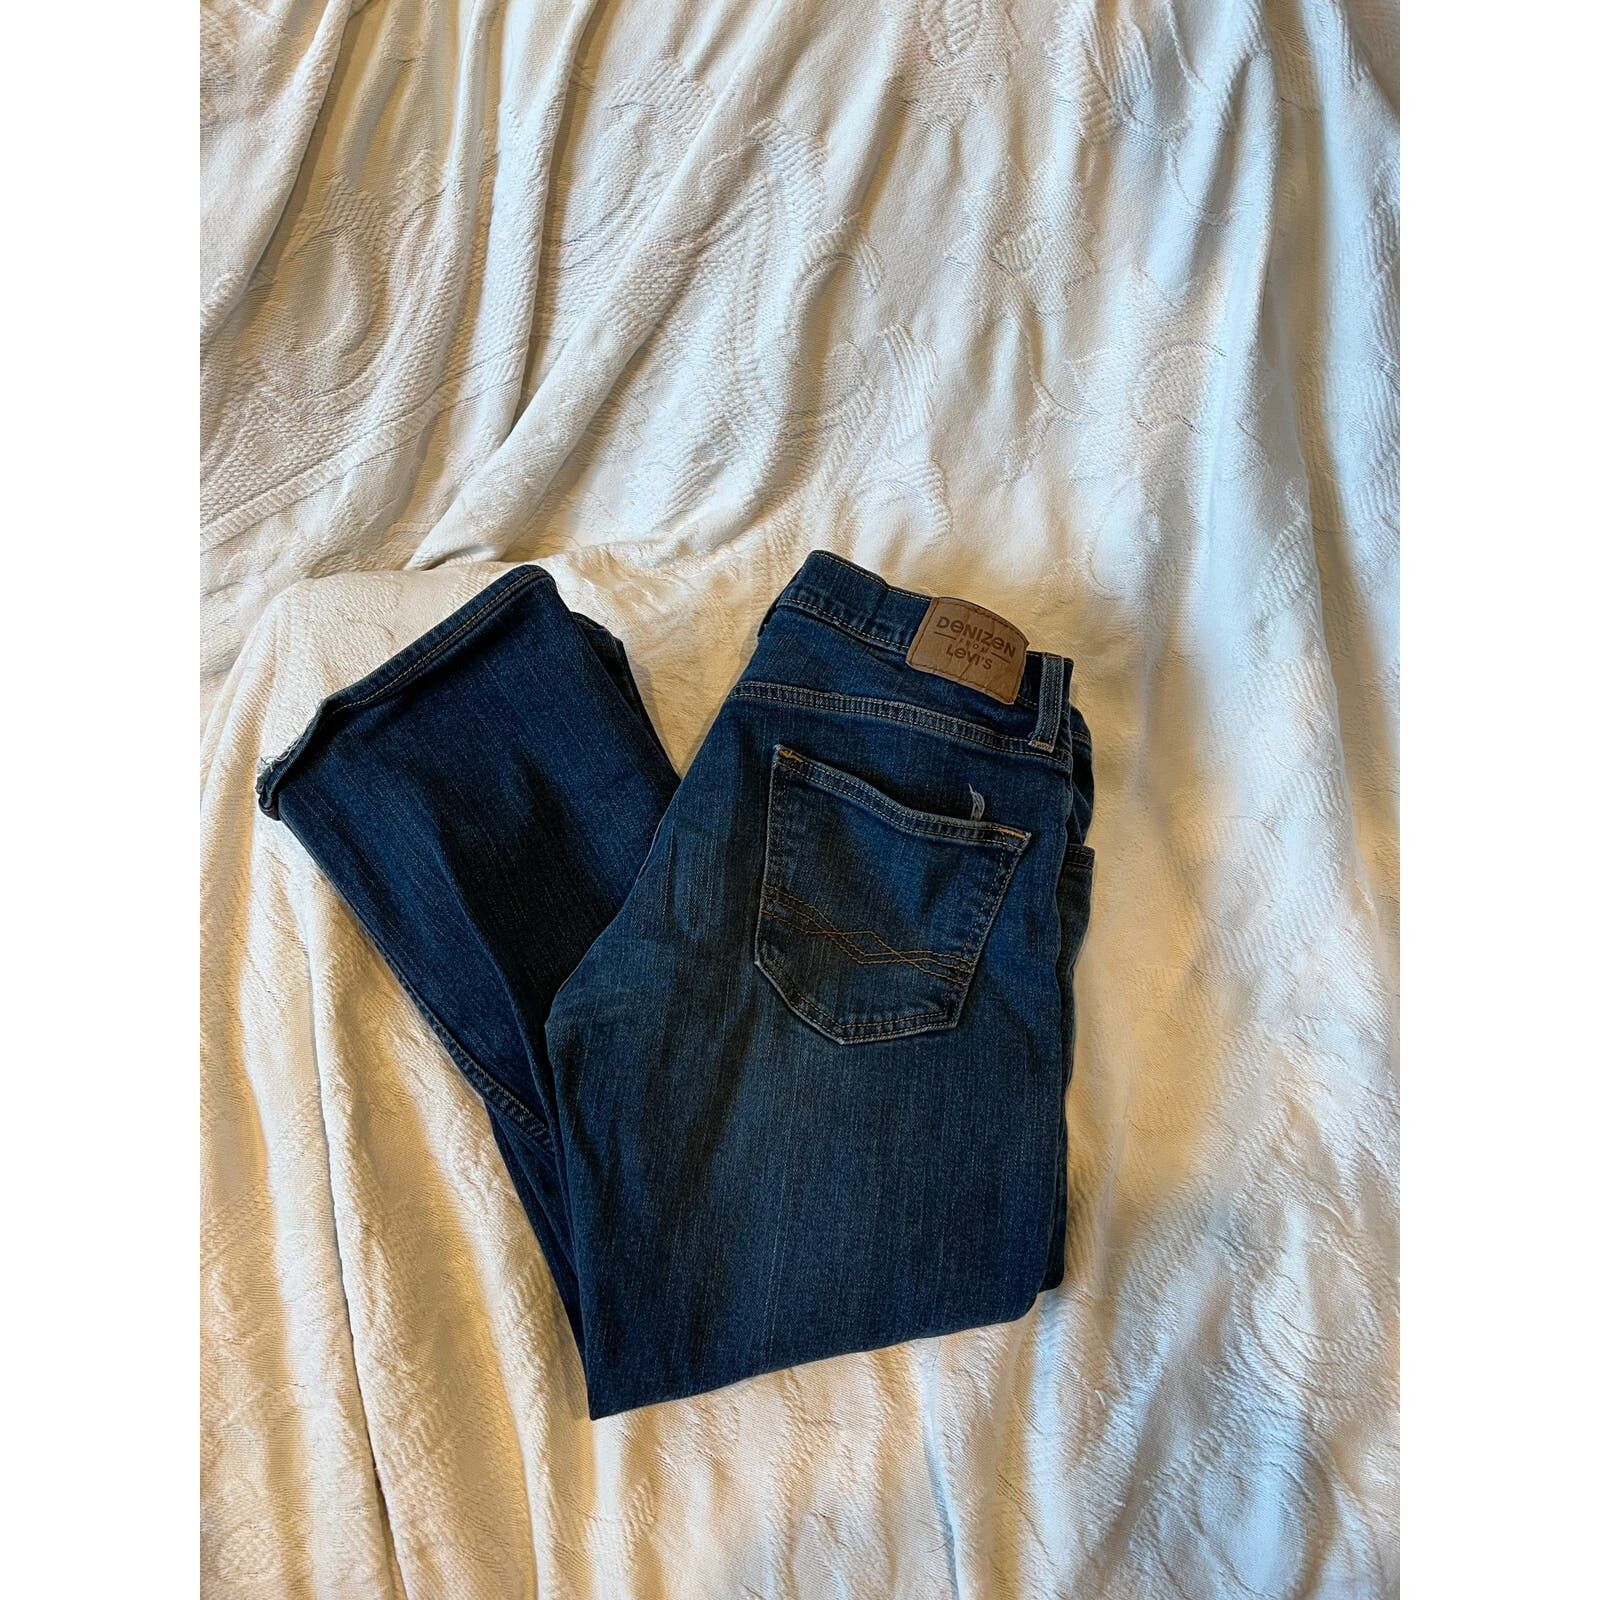 Levi's Levi's Denizen 285 Relaxed Fit Jeans Mens 32x32 Size US 32 / EU 48 - 1 Preview